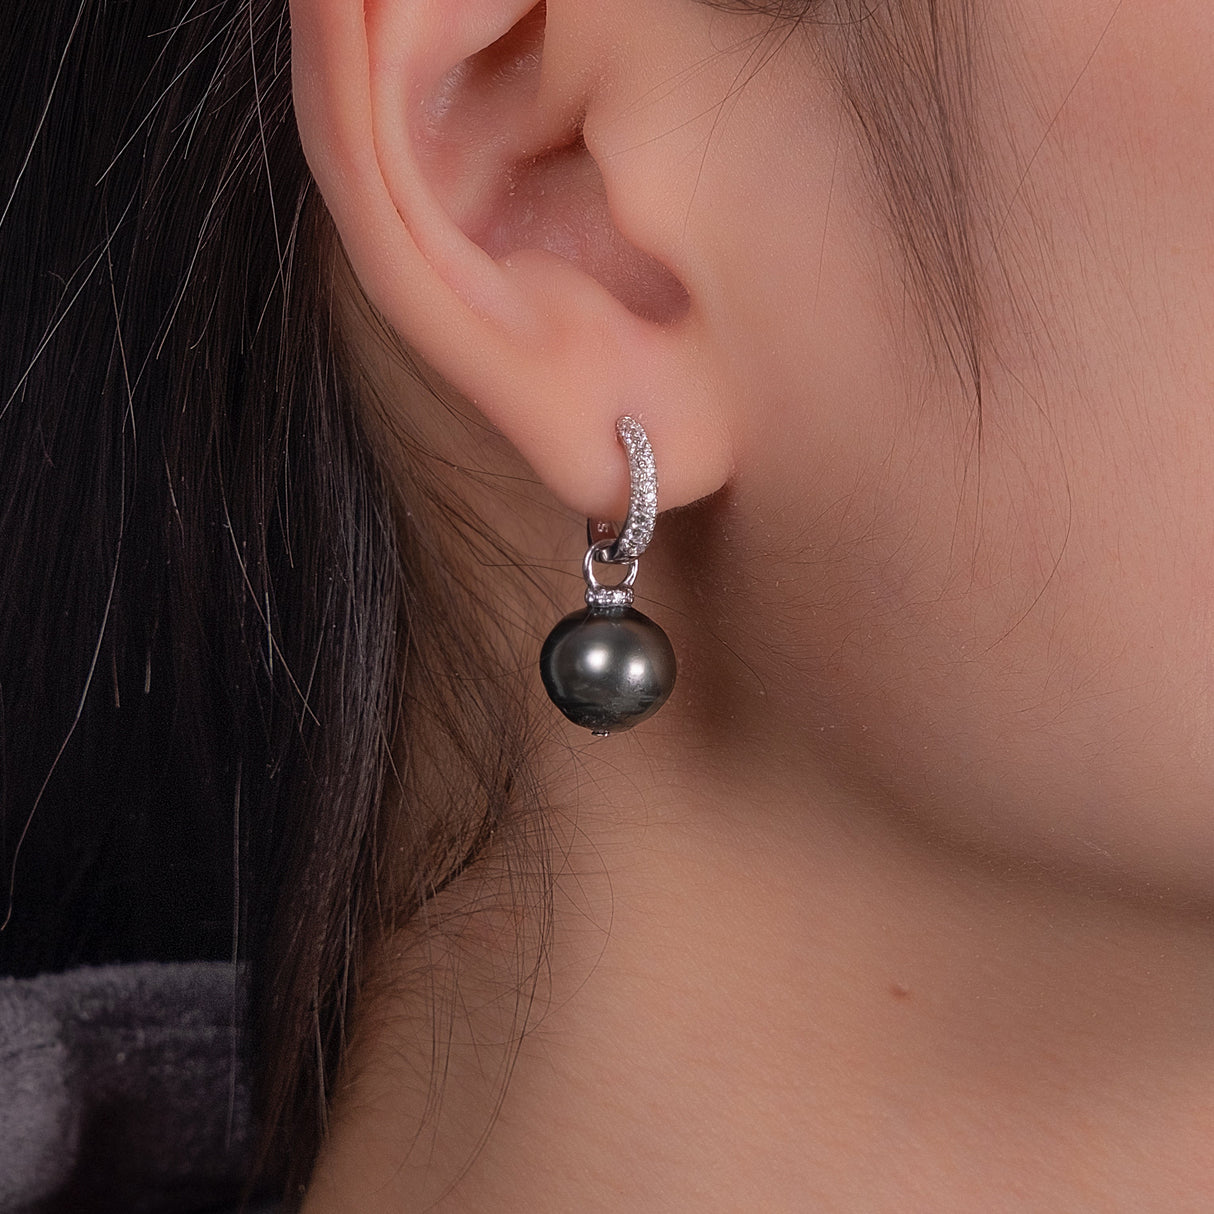 BURLAP LIFE 925 Silver Tahitian Pearl Hinged Hoop Earrings with Cubic Zircon - Detachable Ear Hoops - GexWorldwide